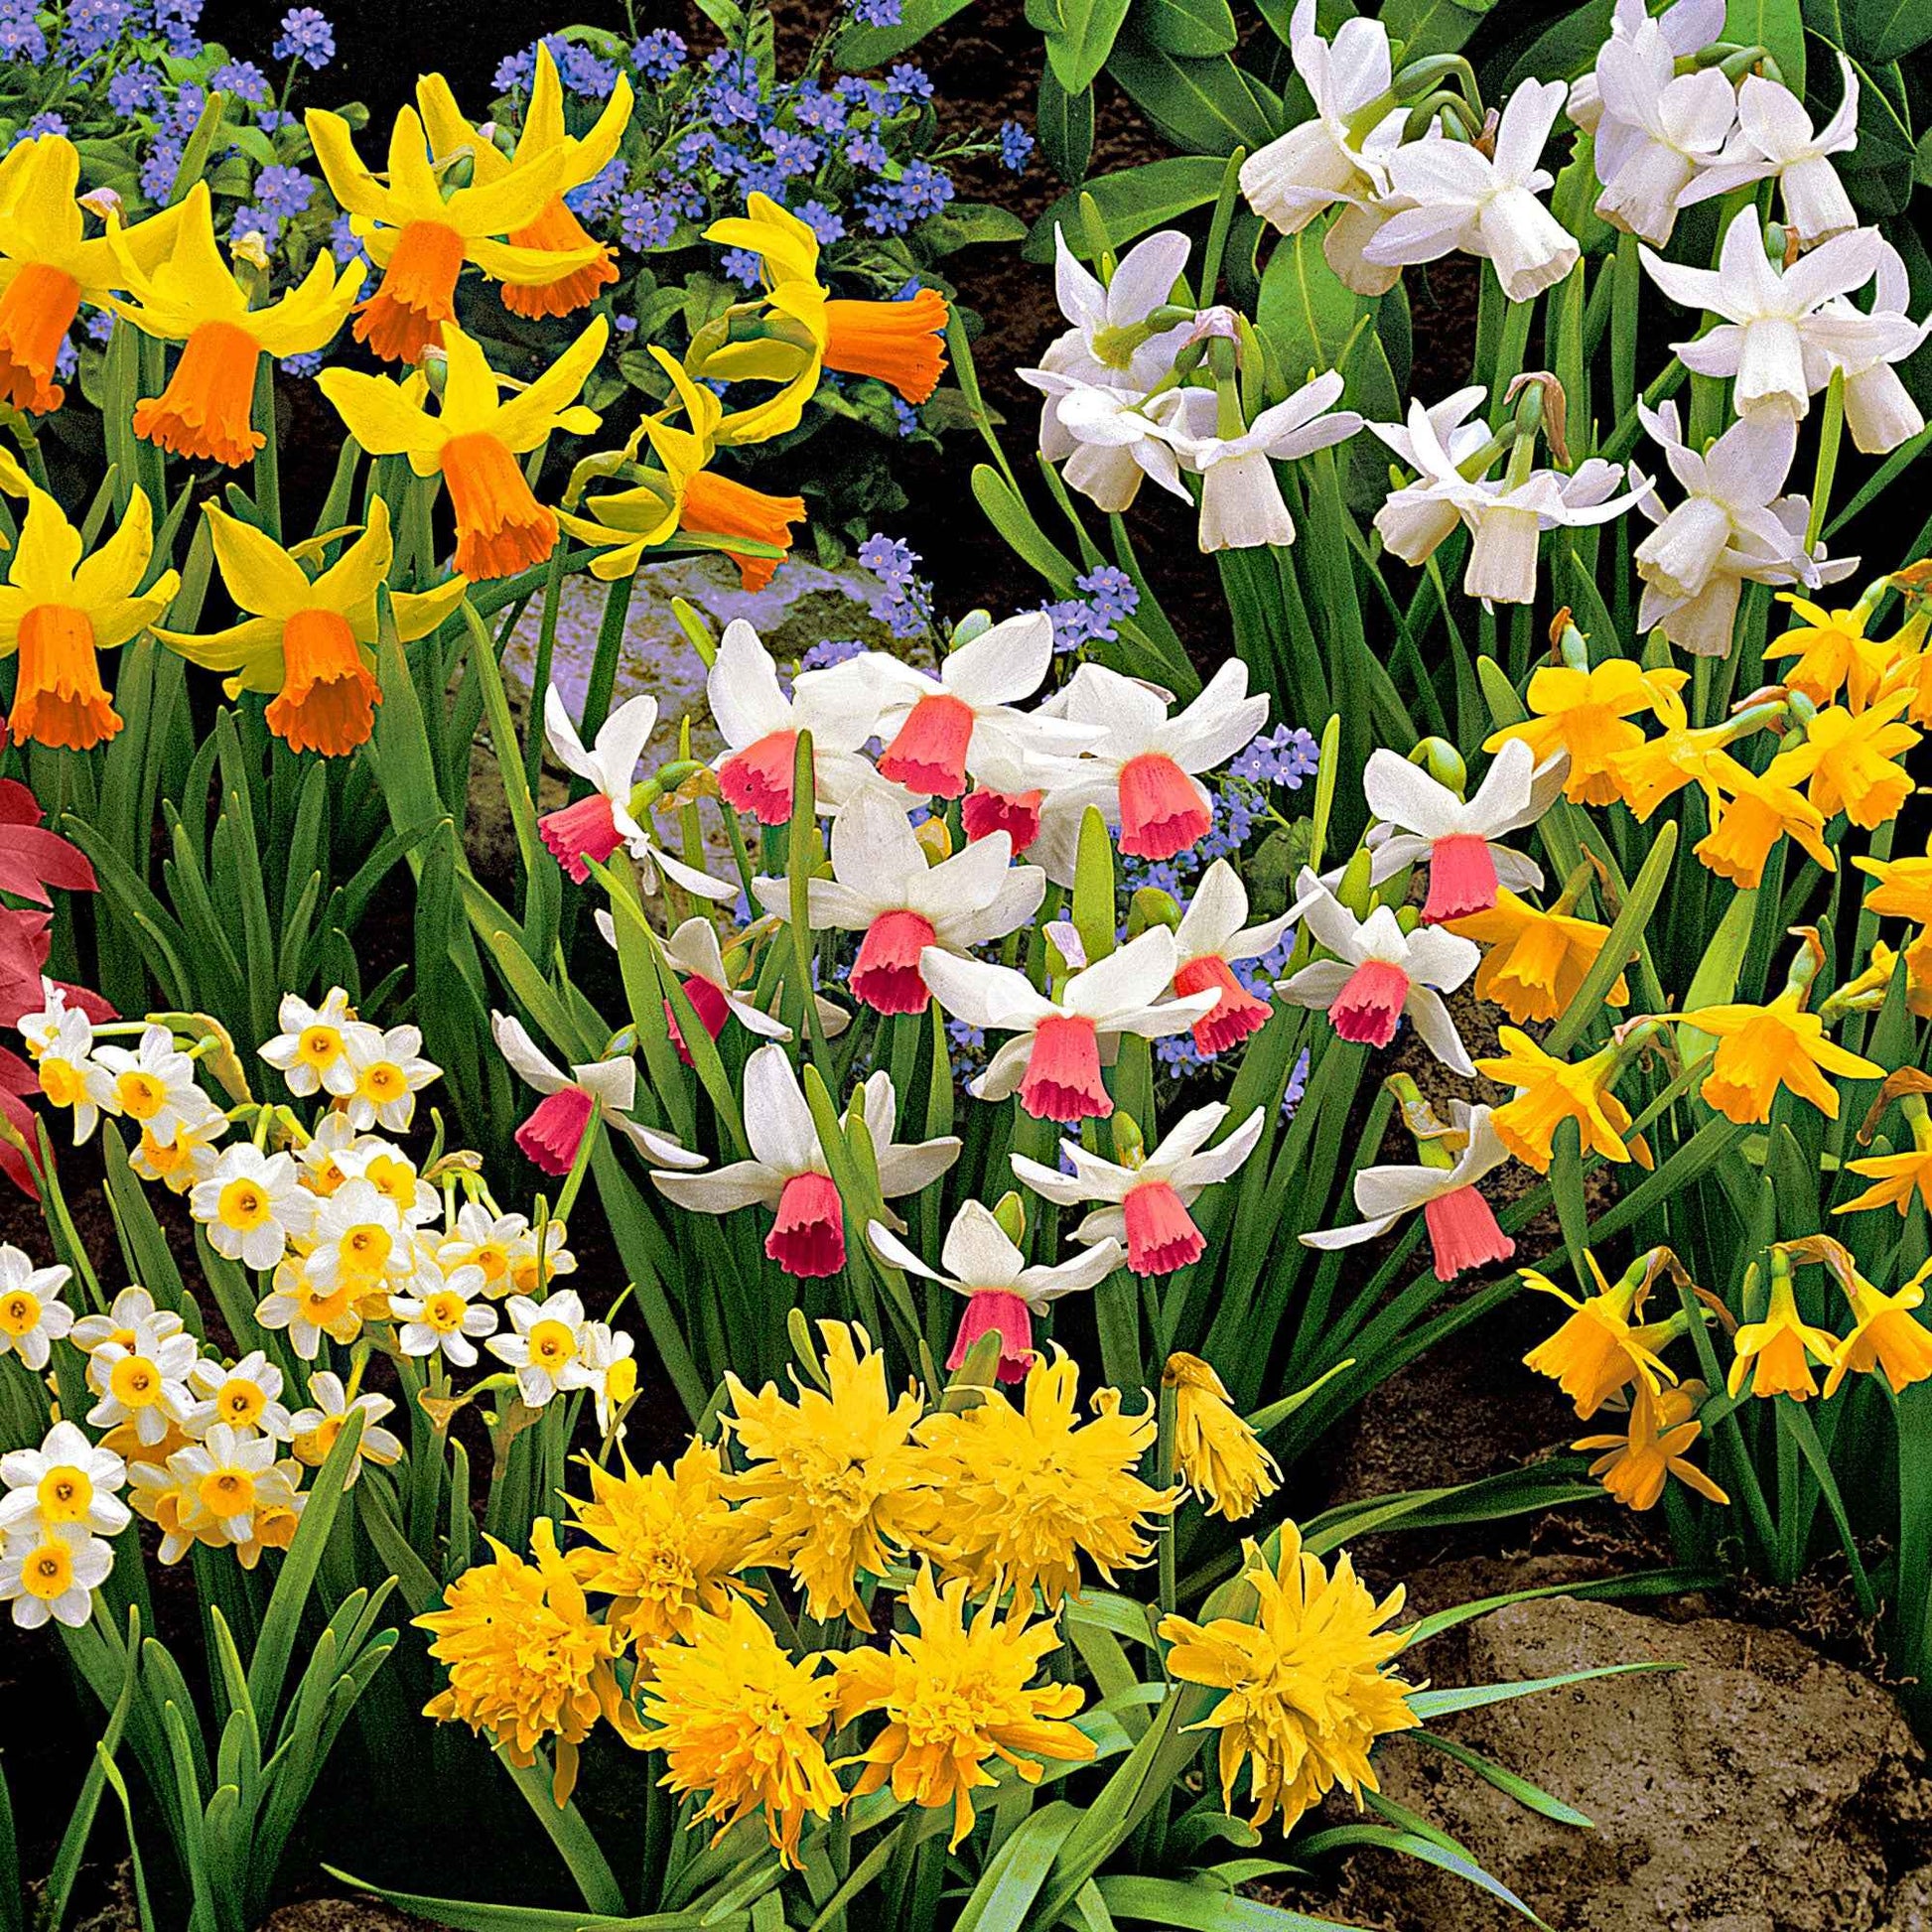 50x Mini narcisses Narcissus - Mélange 'The Miniatures' jaune - Bulbes de fleurs populaires